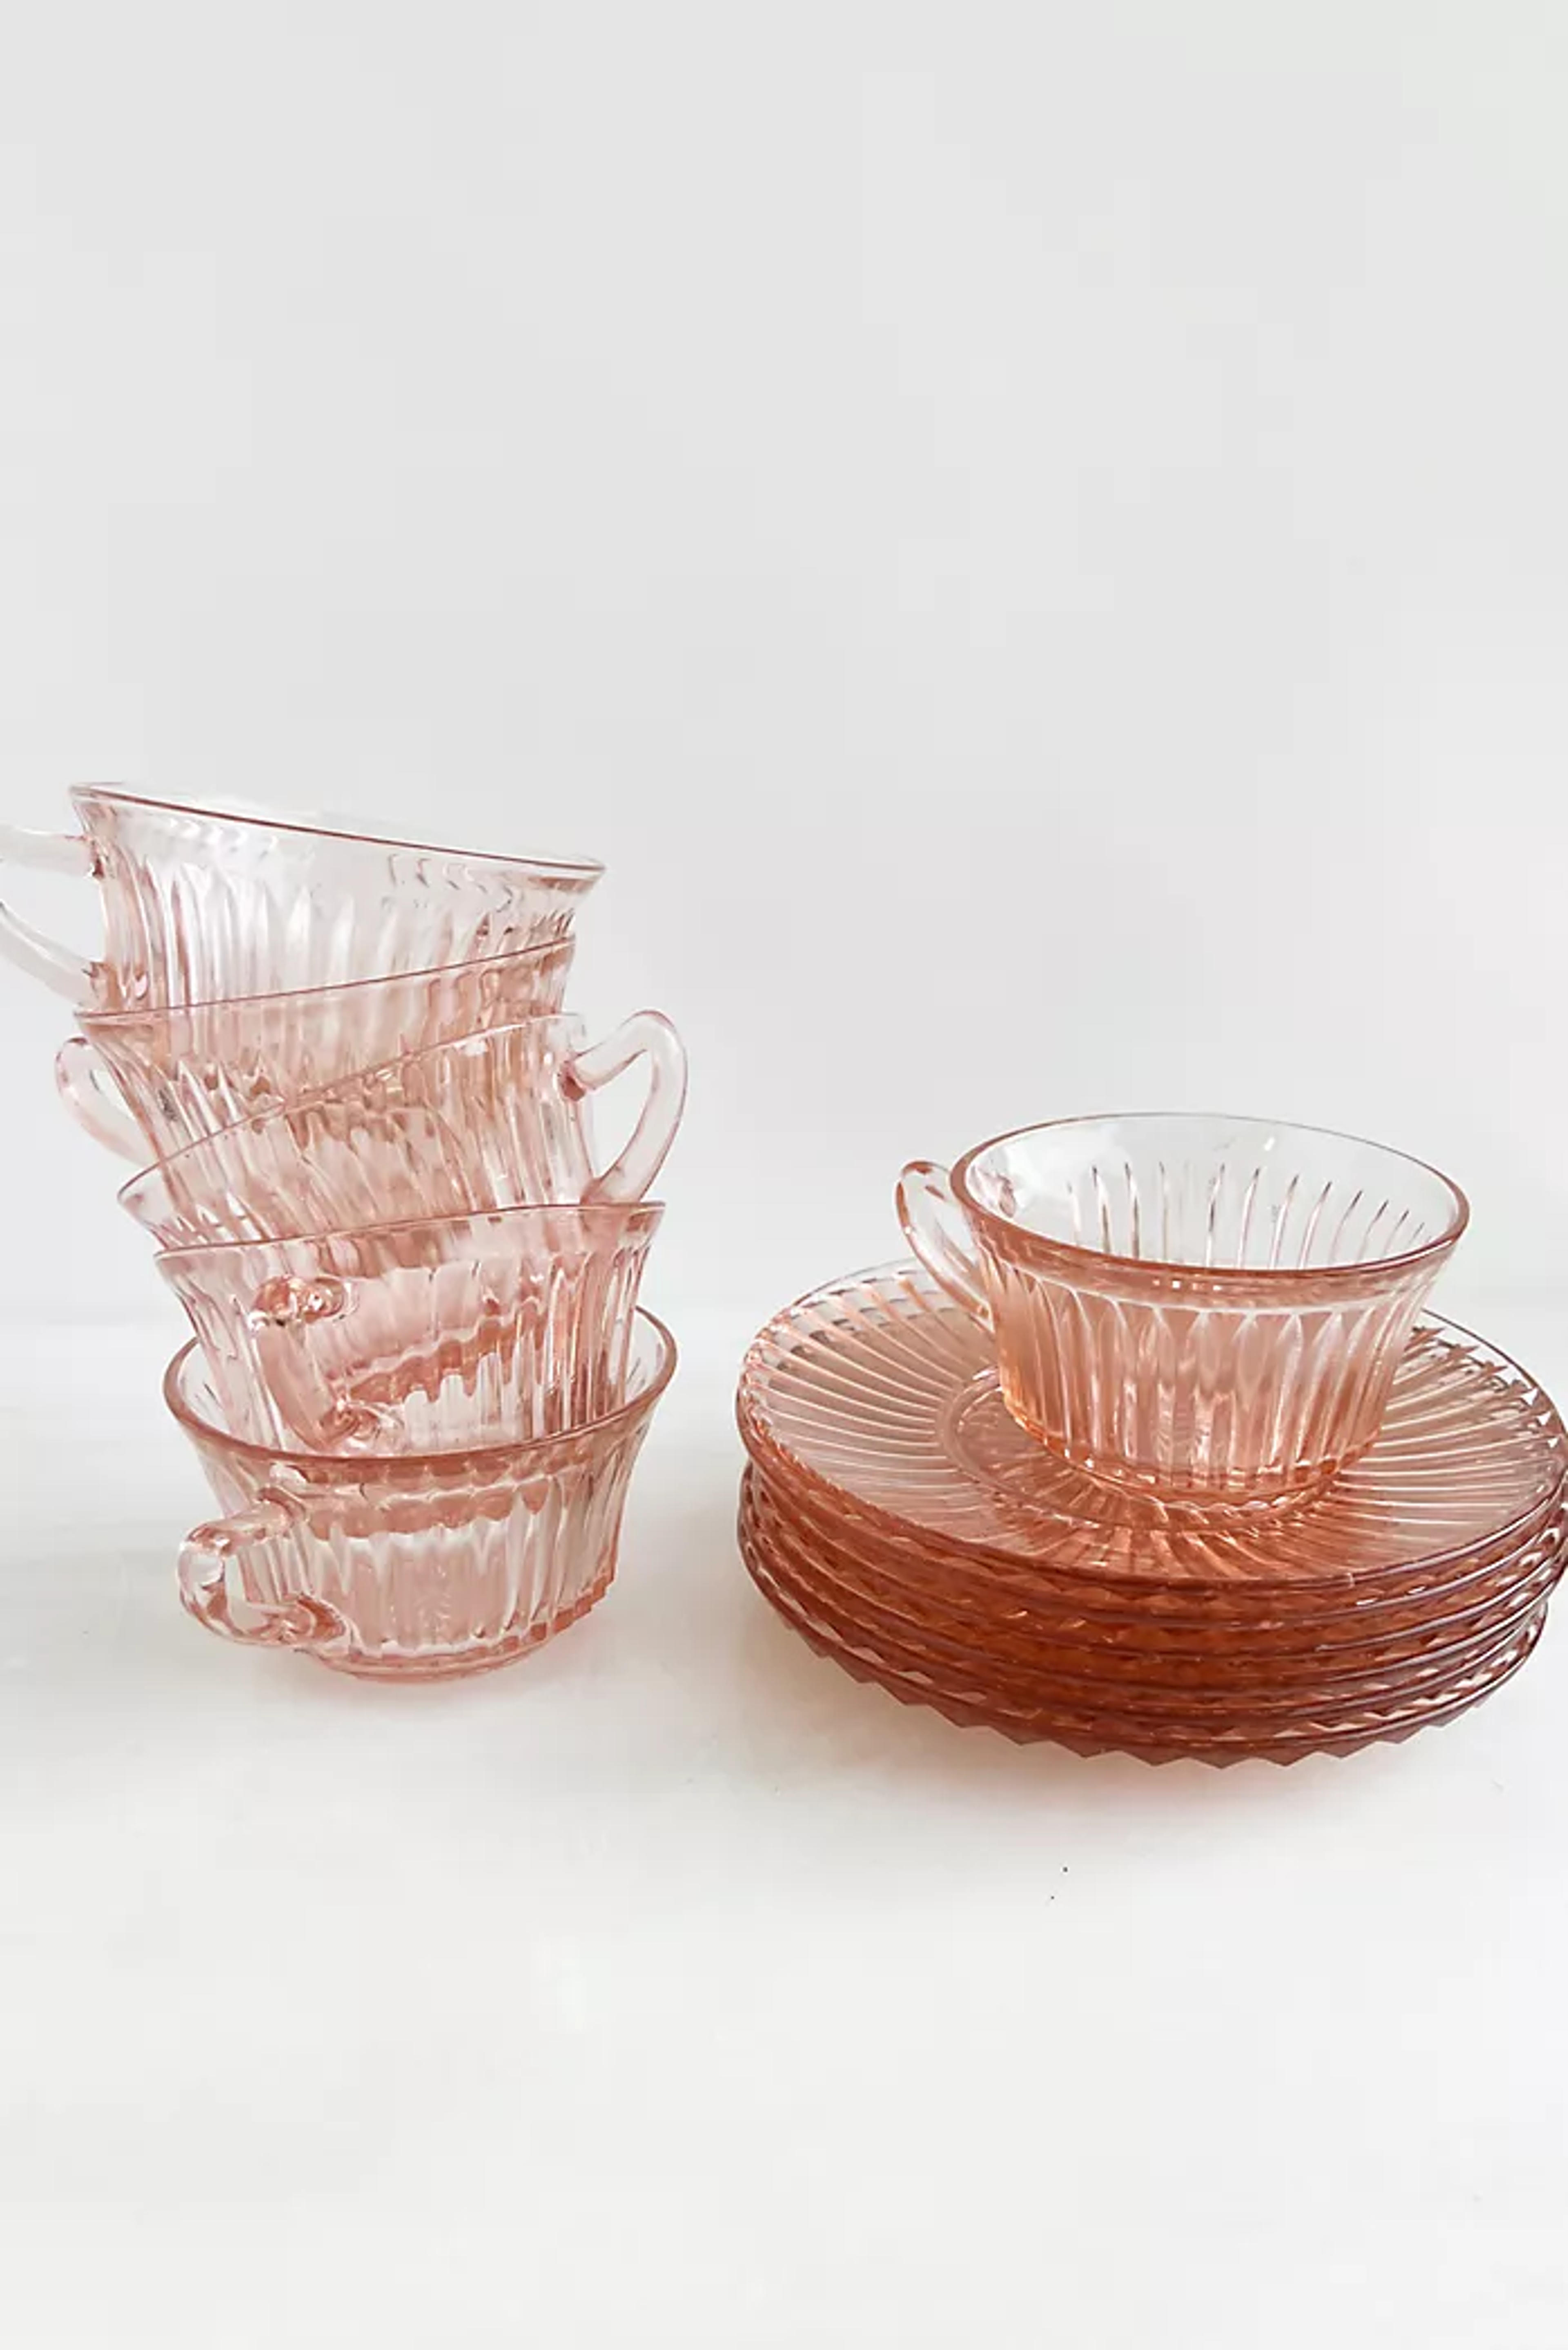 Old Flame Candle Co. Vintage Pink Depression Cup + Saucer Set | Anthropologie